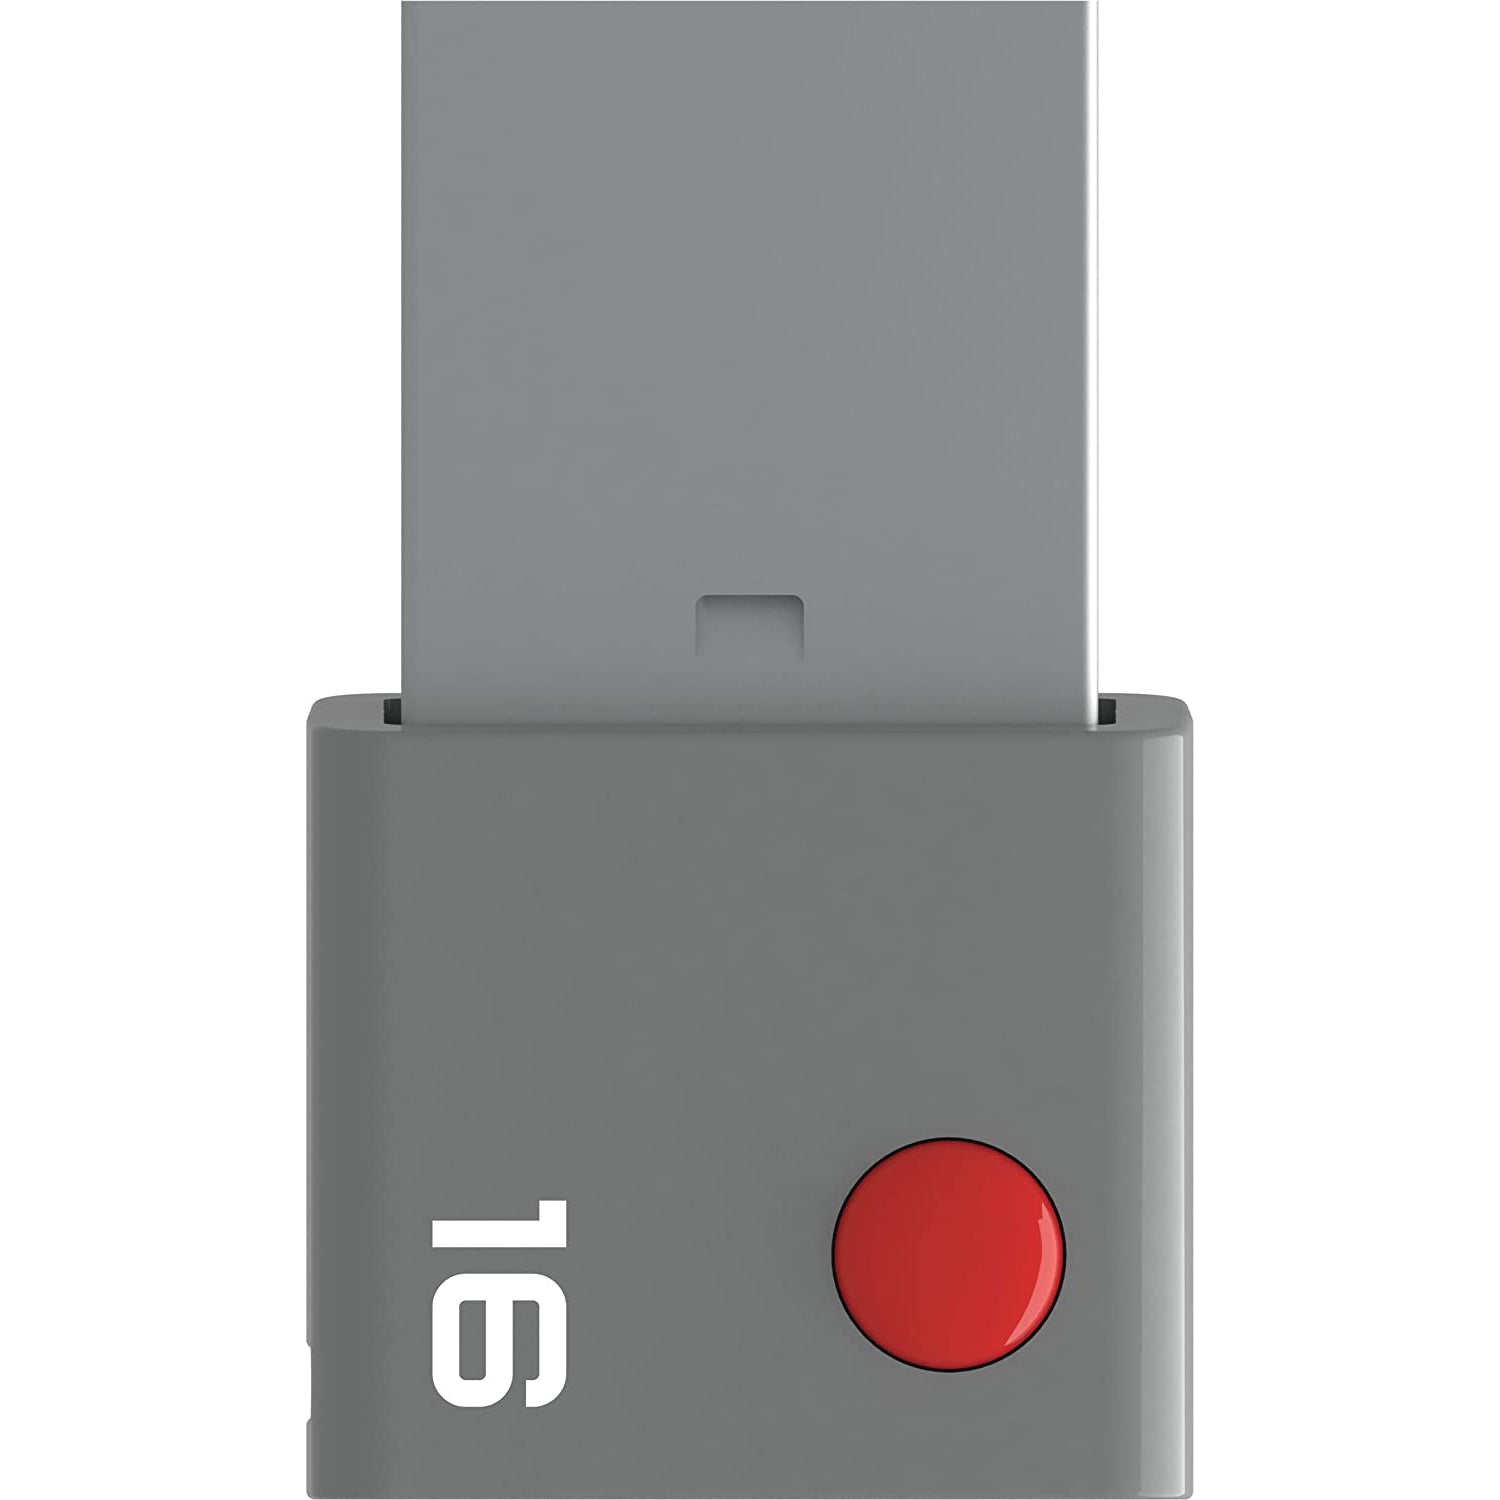 EMTEC Duo USB-C 16GB - Silver / Grey